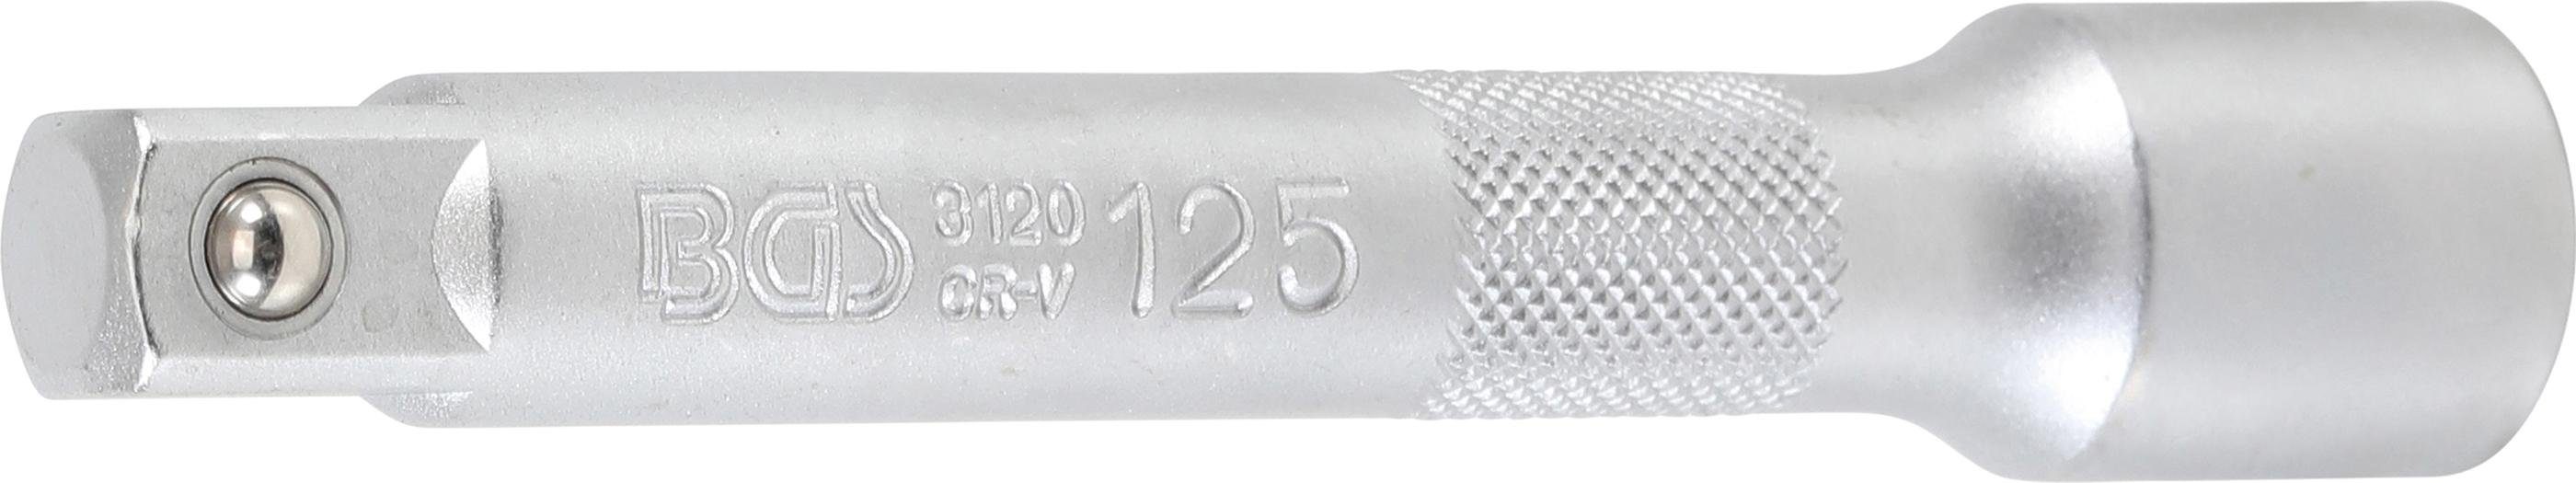 BGS technic Ratschenringschlüssel Verlängerung, 12,5 mm (1/2), 125 mm